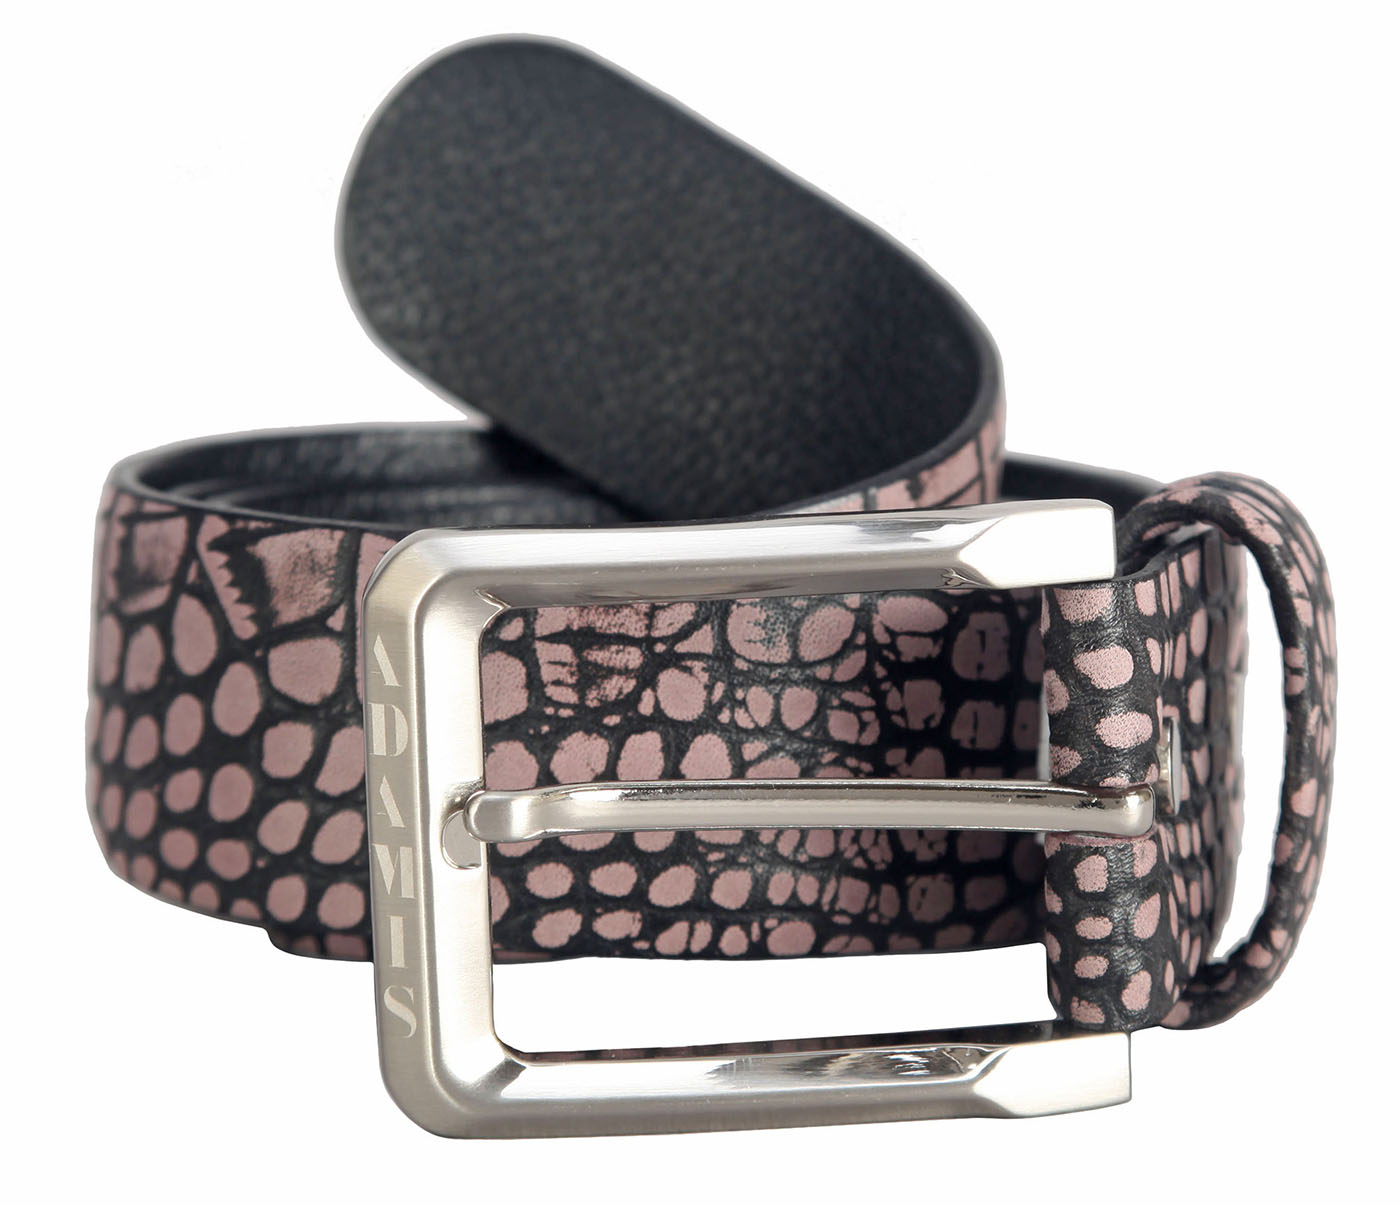 BL149--Men's stylish Casual wear belt in Genuine Leather - Beige